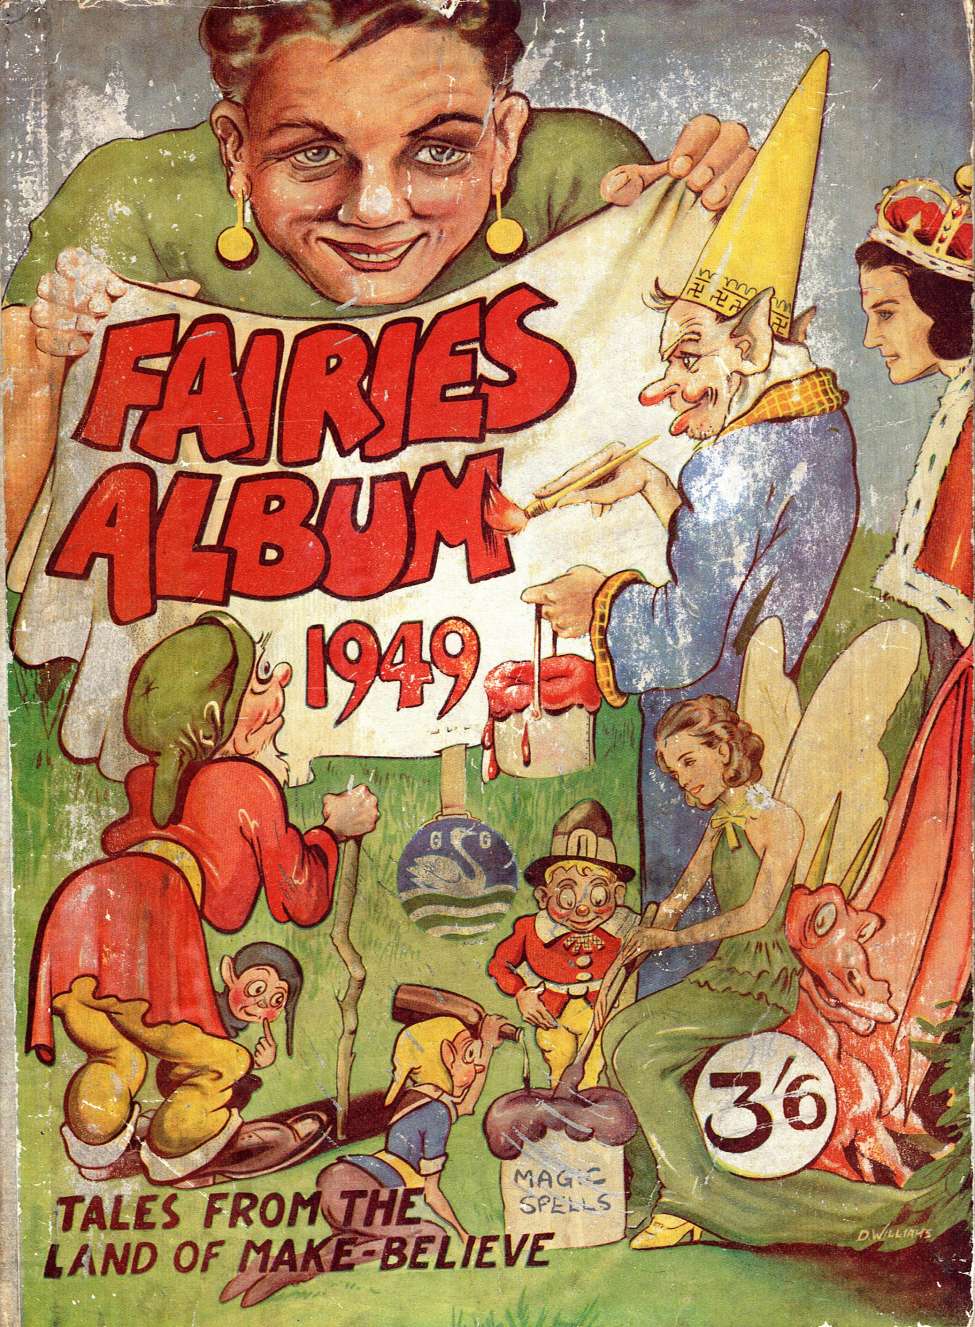 Book Cover For Fairies Album 1949